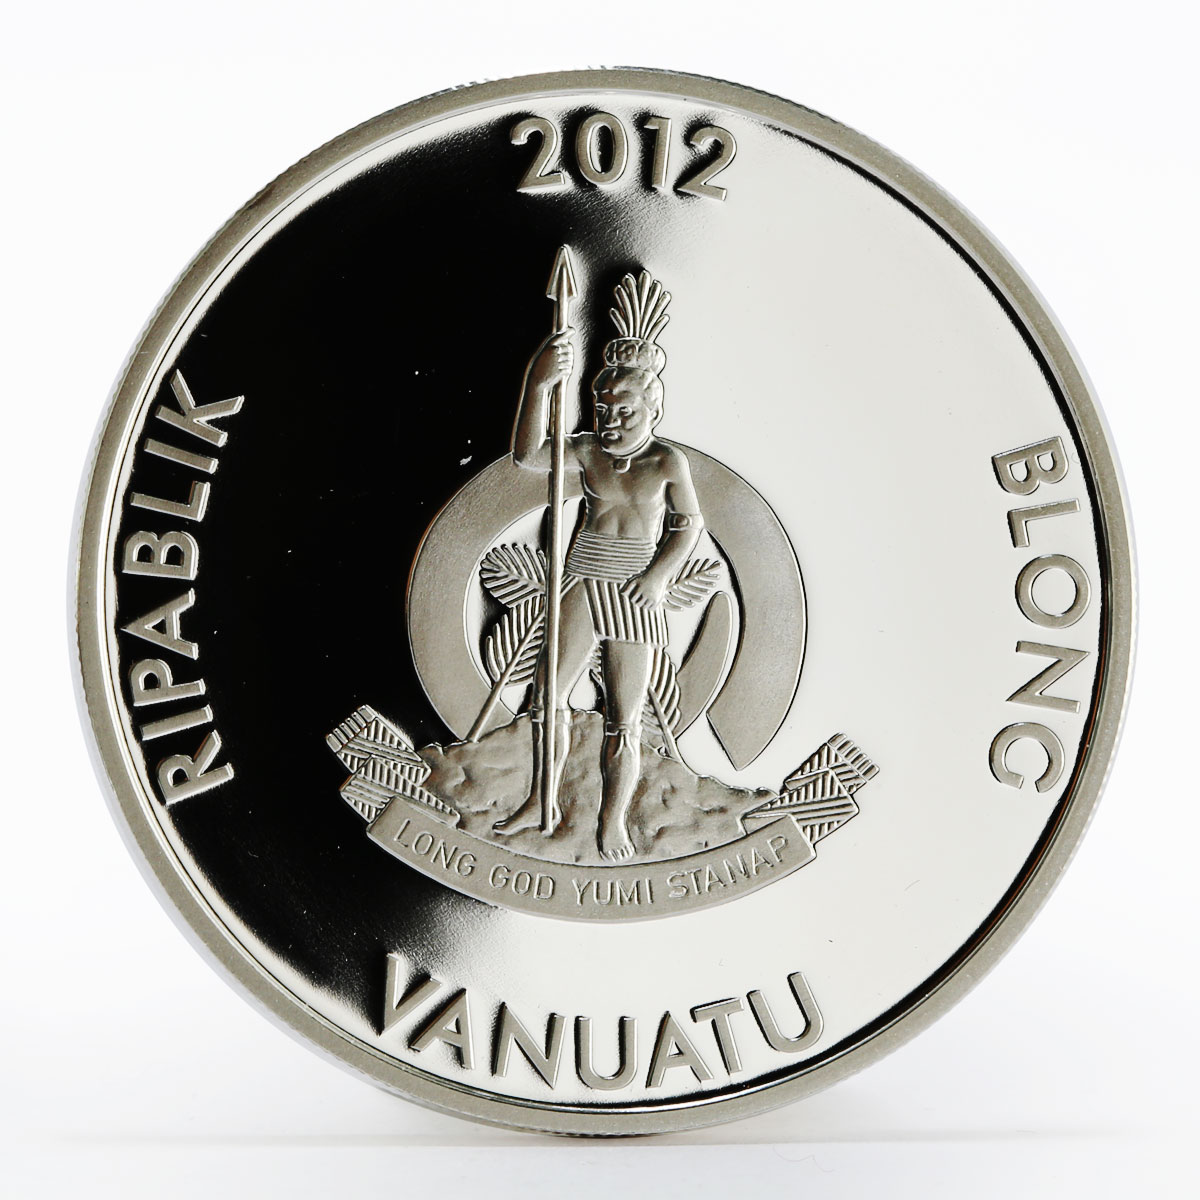 Vanuatu 50 vatu 2014 FIFA World Cup in Brazil colored proof silver coin 2012